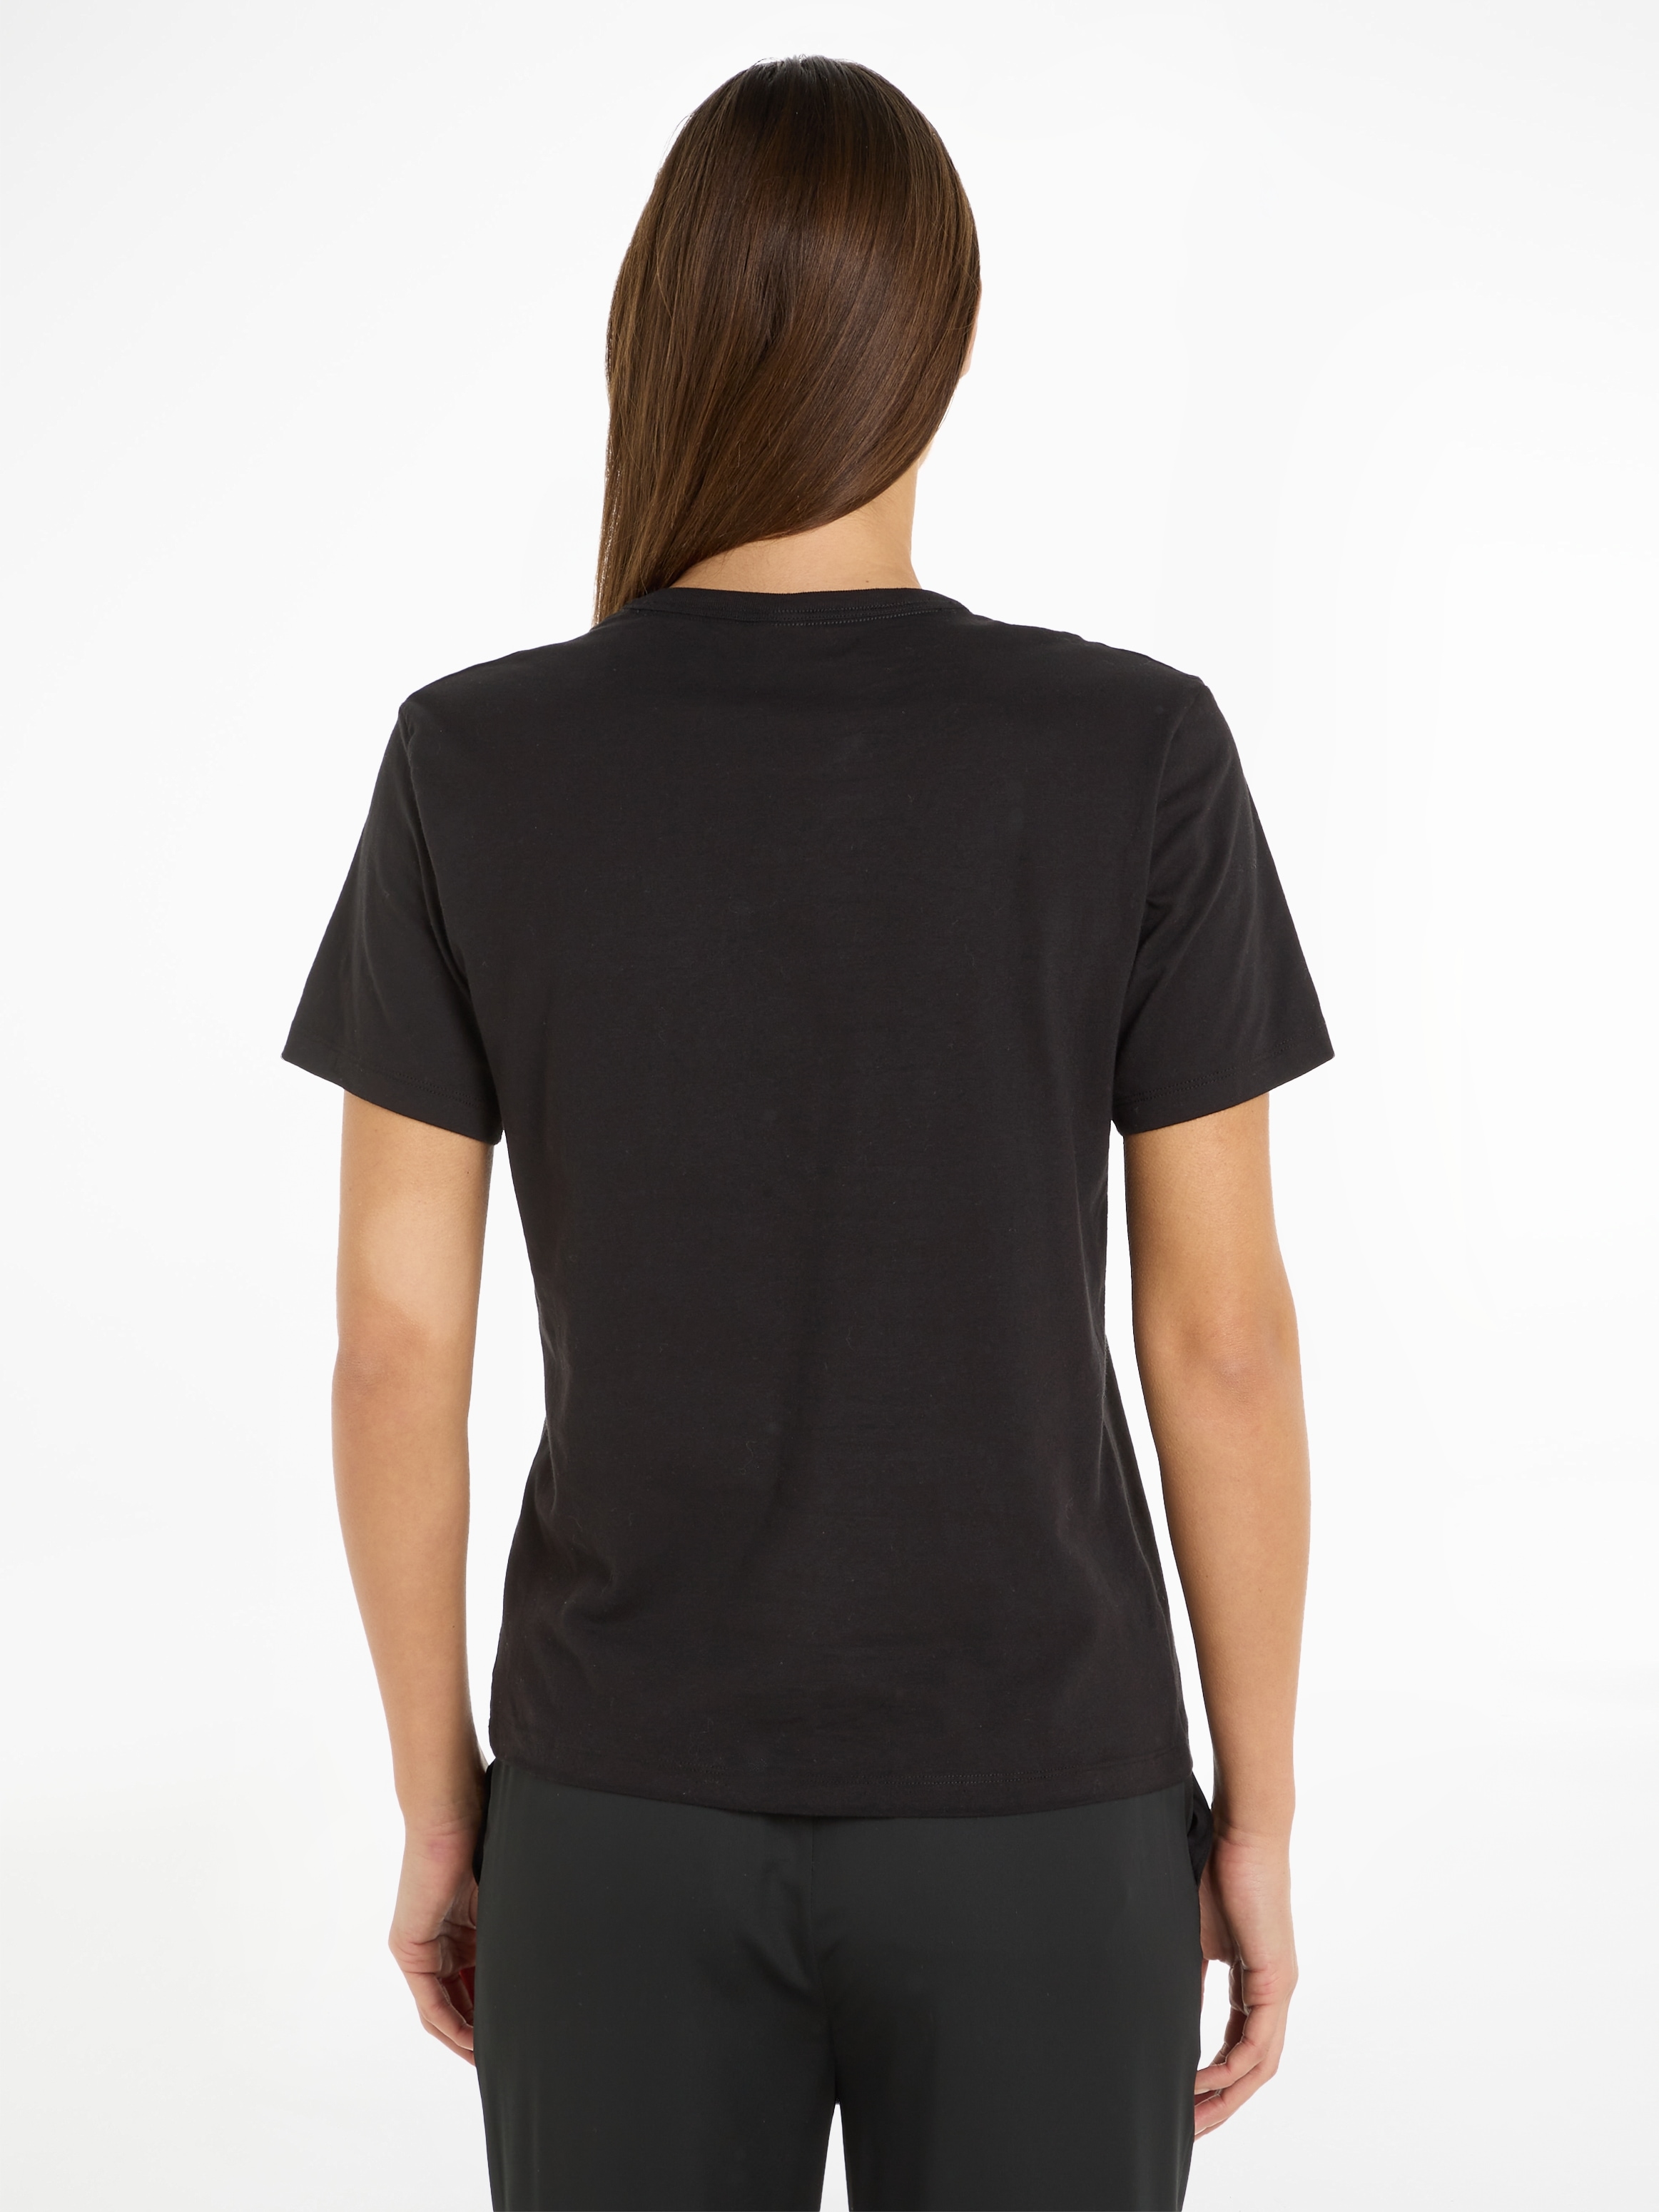 Calvin Klein Underwear T-Shirt, mit großem Logodruck